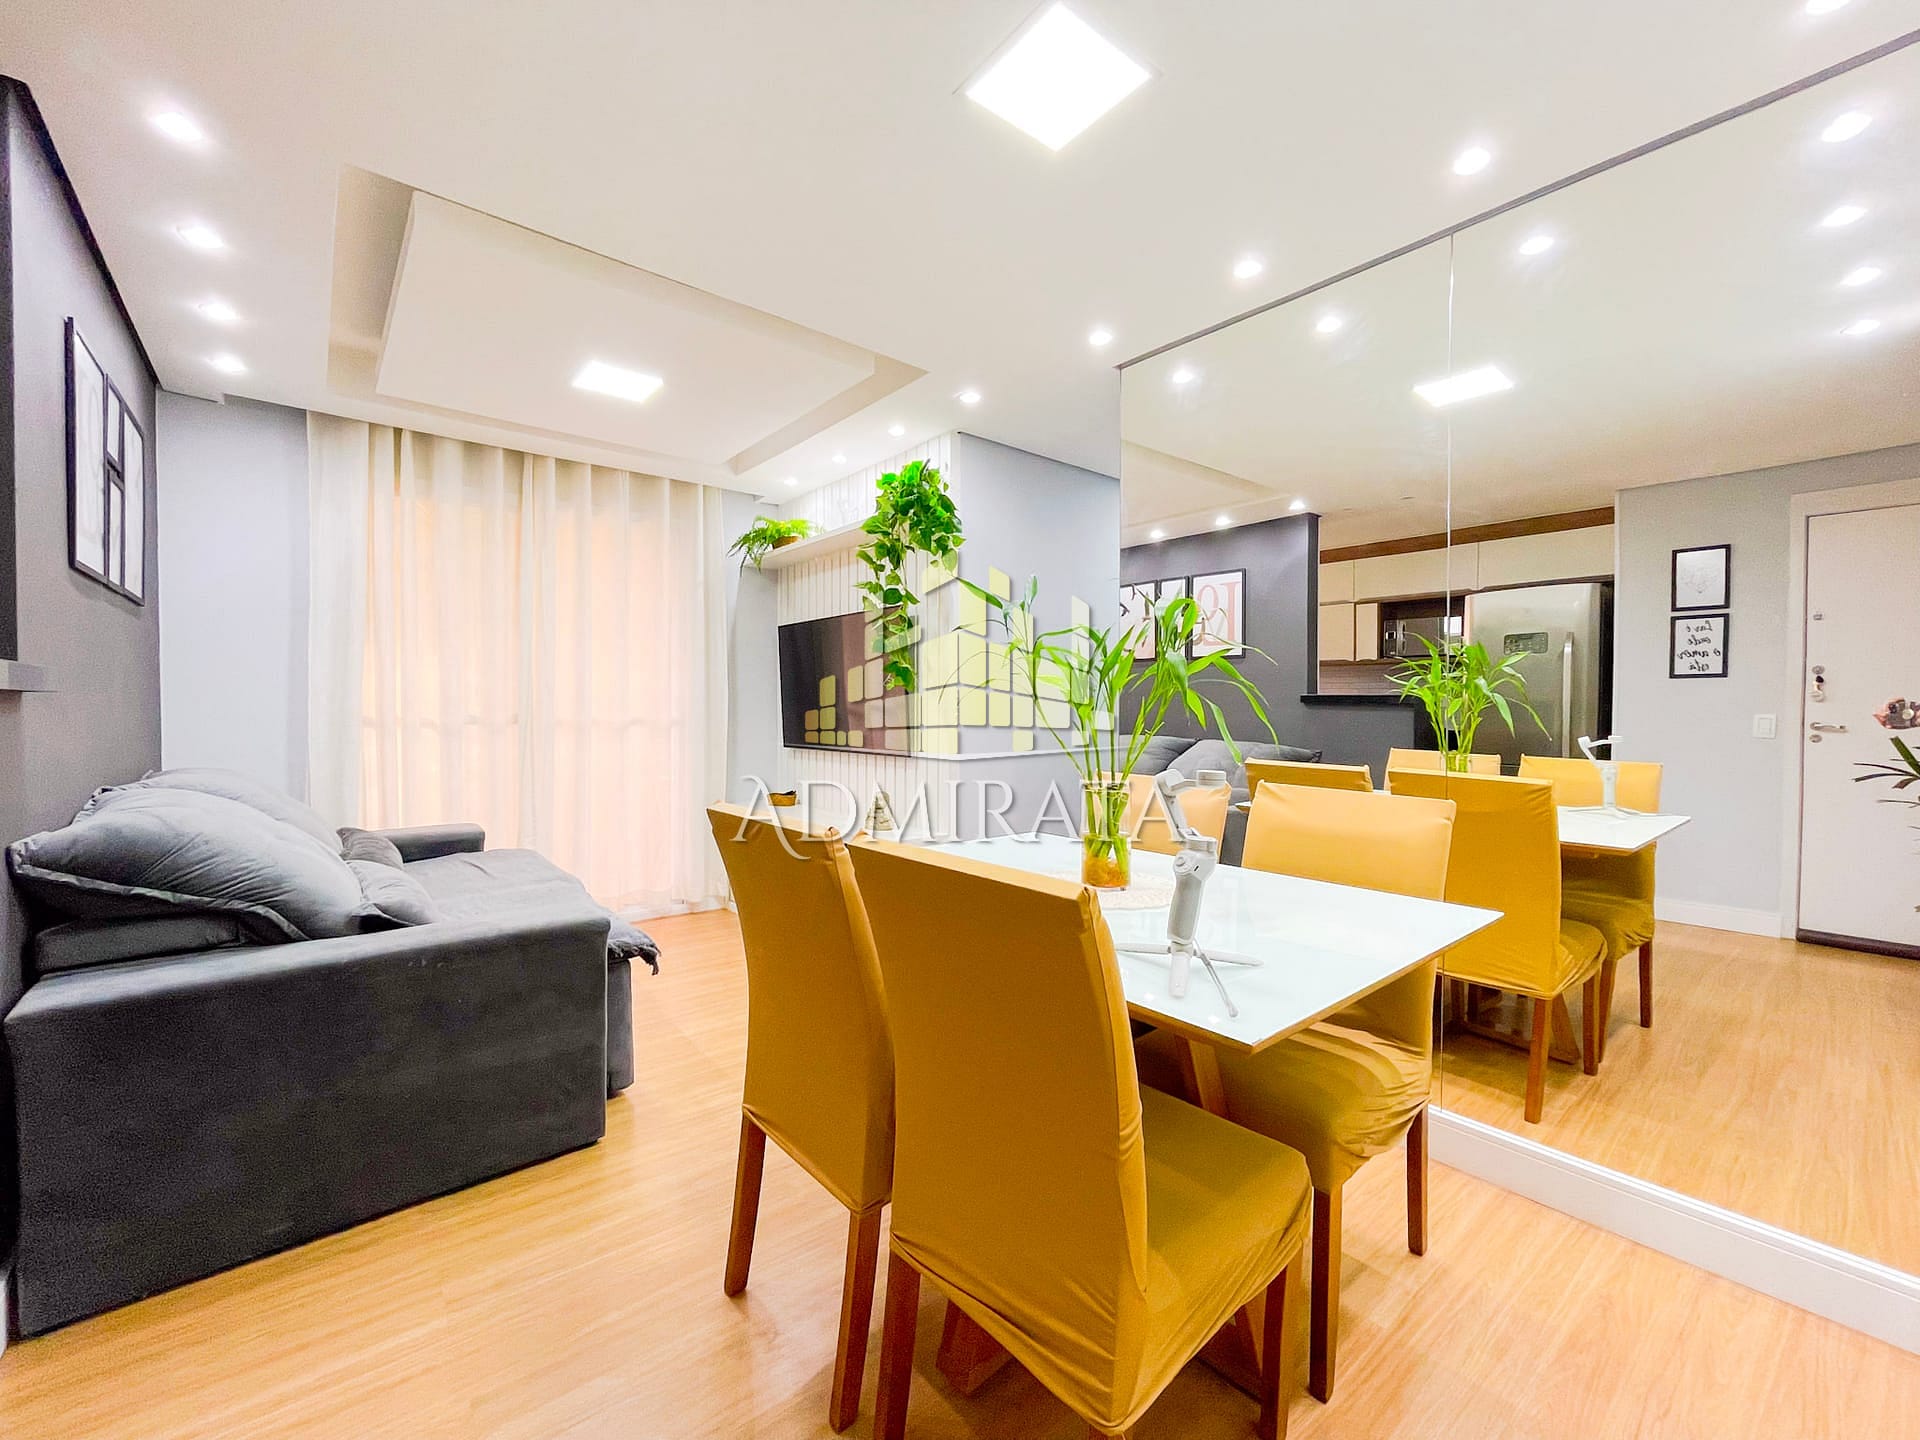 Apartamento em Jacarepaguá, Rio de Janeiro/RJ de 670m² 3 quartos à venda por R$ 519.000,00